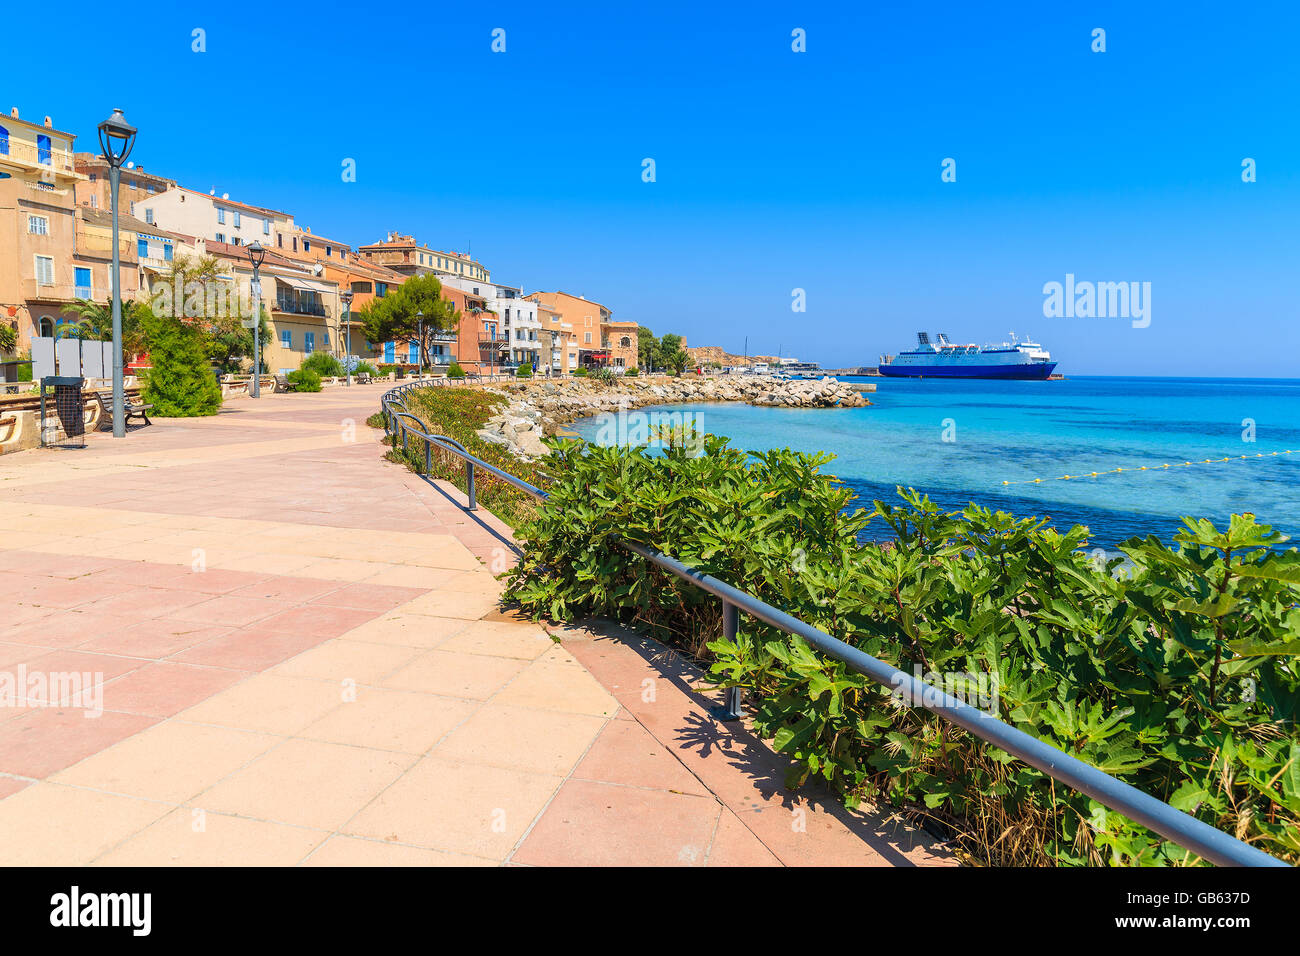 Passeggiata lungo mare in Ile Rousse città costiera, Corsica, Francia Foto Stock